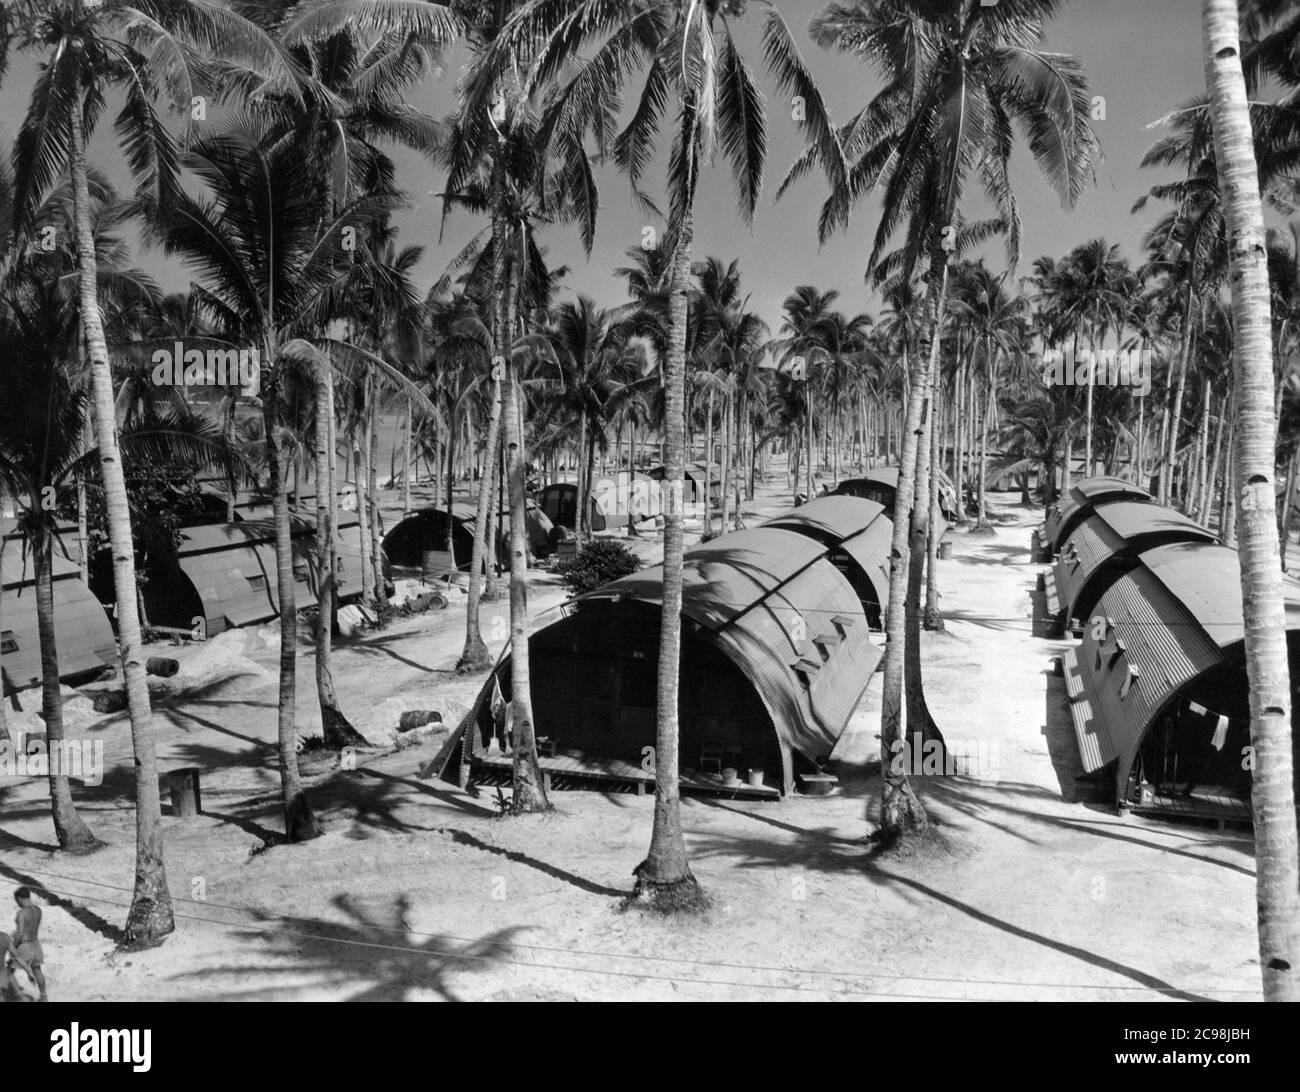 Quarset Hütten am Strand. Camp Dealey Submarine Recuperation Camp. Guam, Juli 1945. Zum 75. Jahrestag des V-J Day hat die Consoli Collection vier Fotoessays von U.S. Navy LT. (j.g.) veröffentlicht. Joseph J. Consoli. Die Fotos wurden zwischen Juli und Dezember 1945 auf den Marianen aufgenommen. Sie dokumentieren das Leben der US-Marine vor und nach der japanischen Kapitulation. Stockfoto